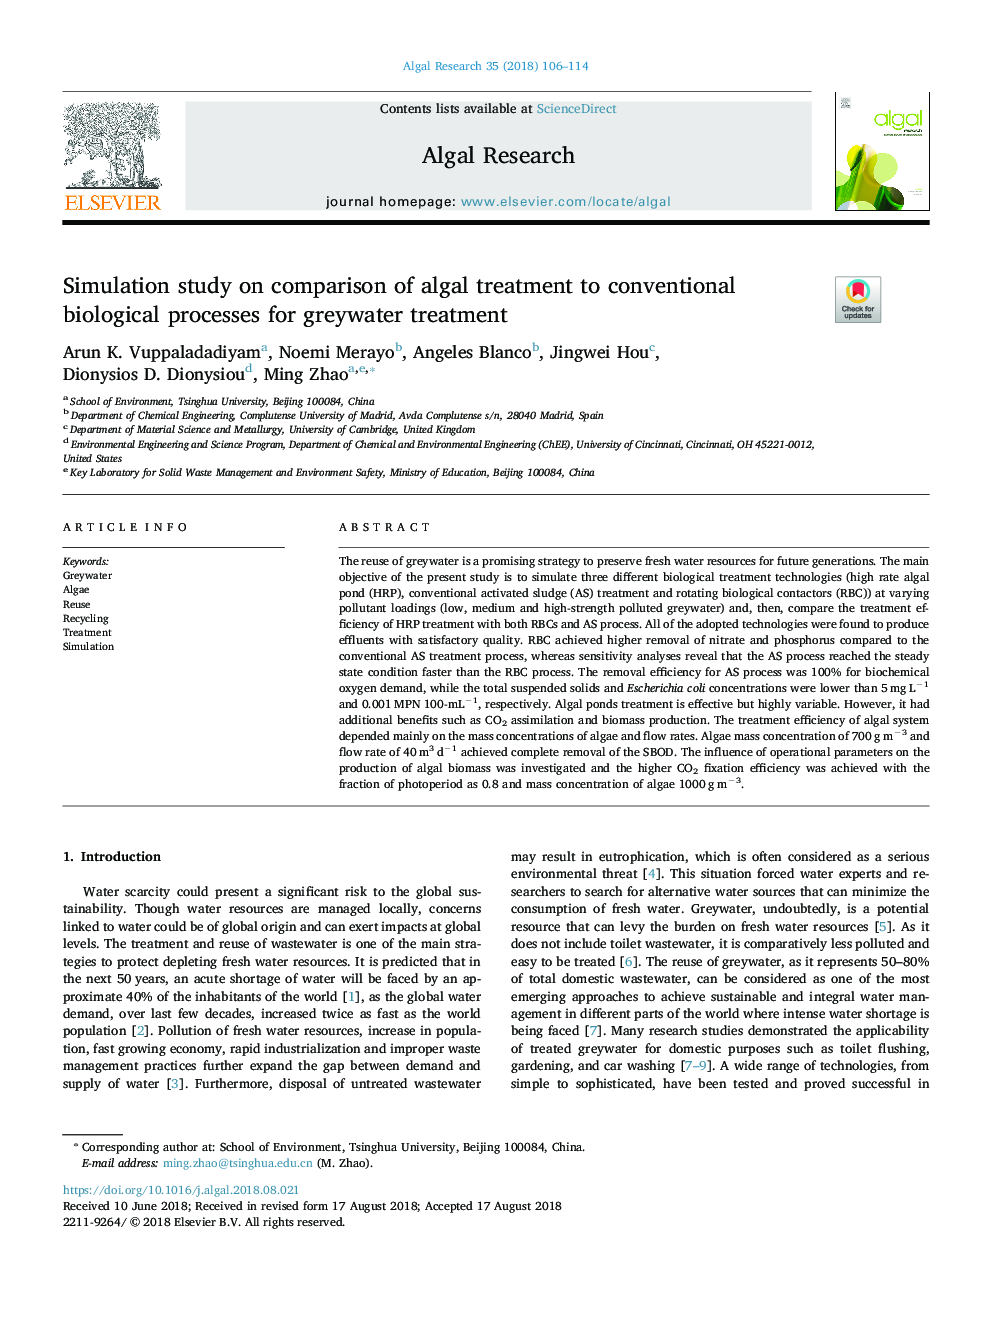 مطالعه شبیه سازی در مقایسه با درمان جلبک با فرآیندهای بیولوژیکی معمول برای درمان آب گرم